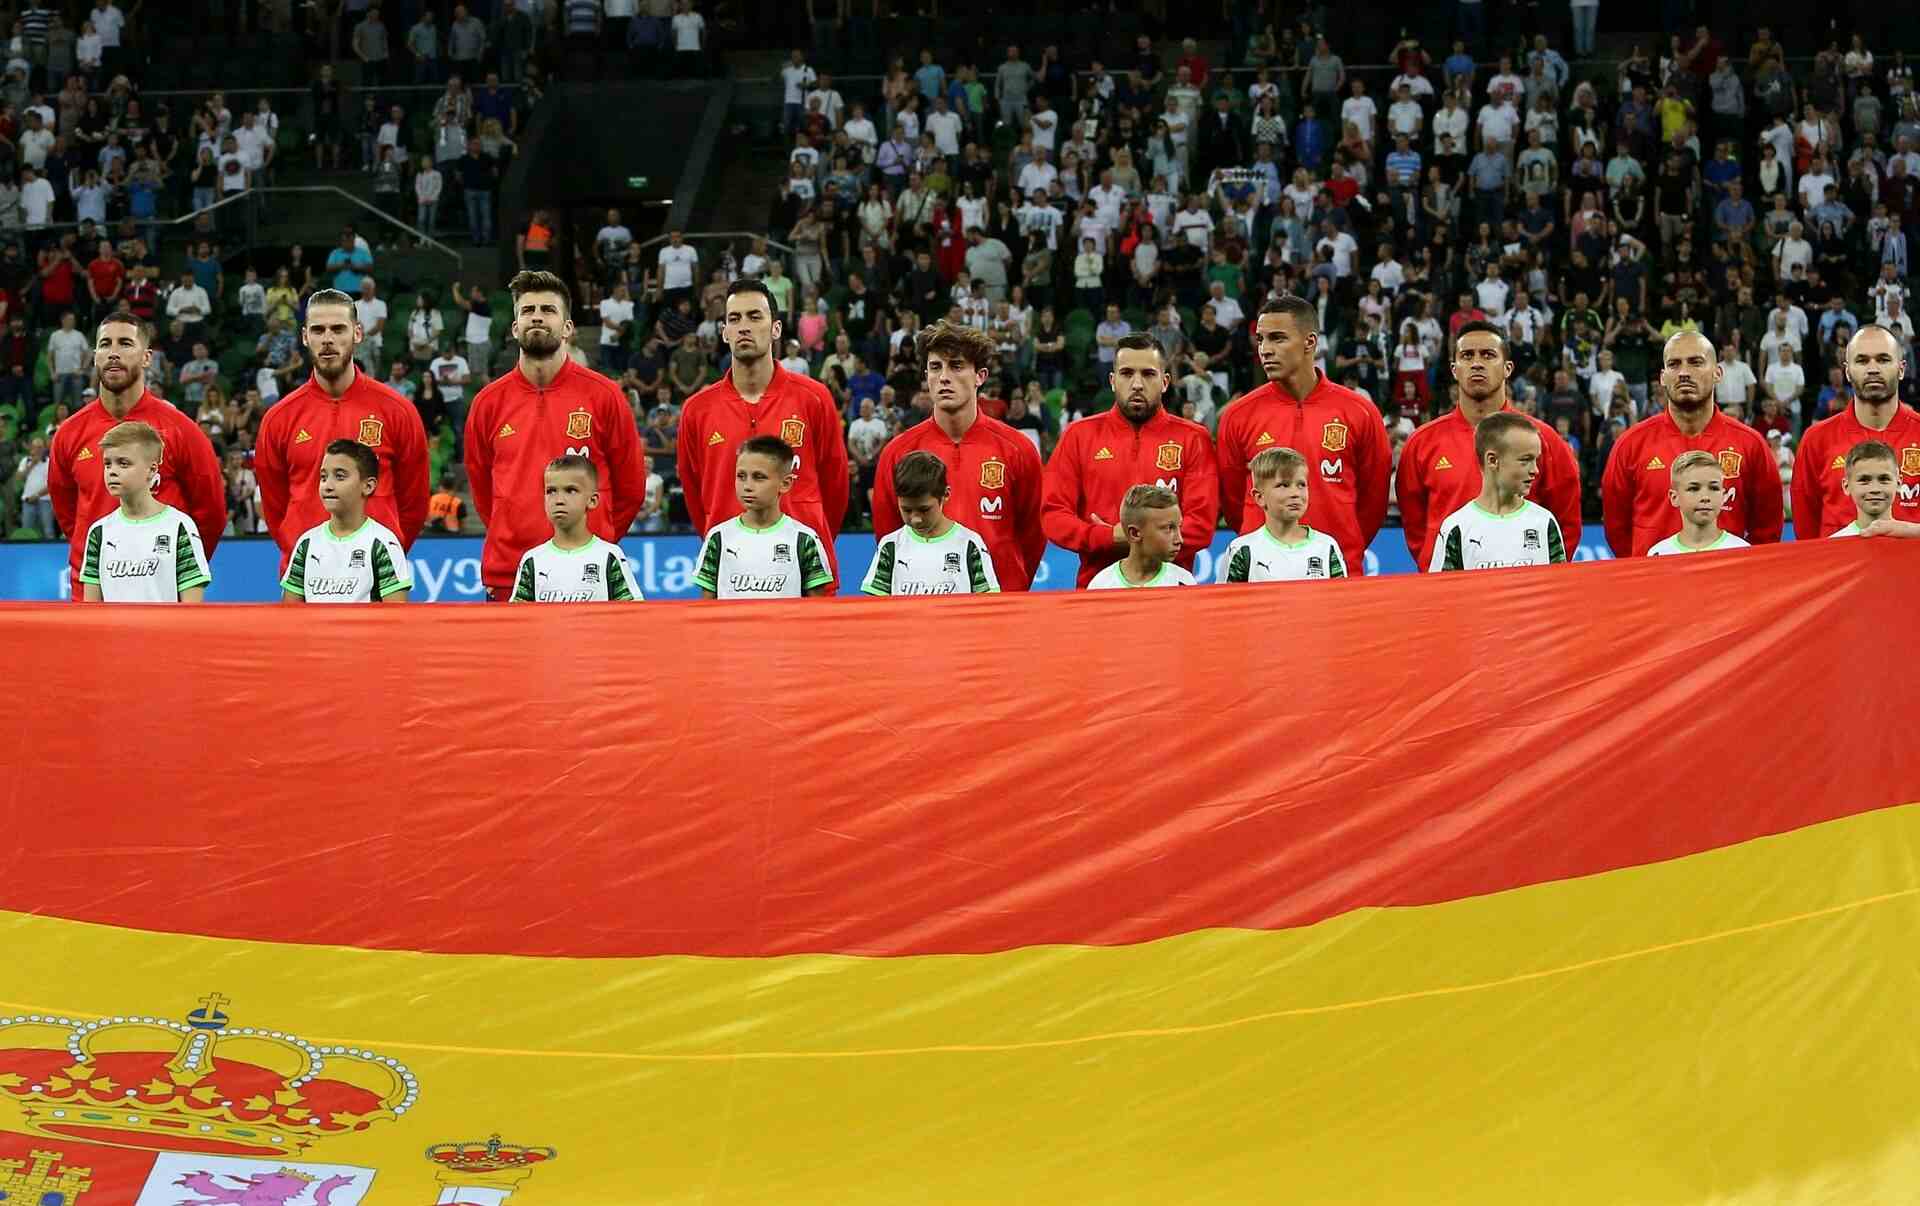 سانشيز: المنتخب الإسباني يفتقد للهوية «سبب سقوطه أمام ألمانيا»